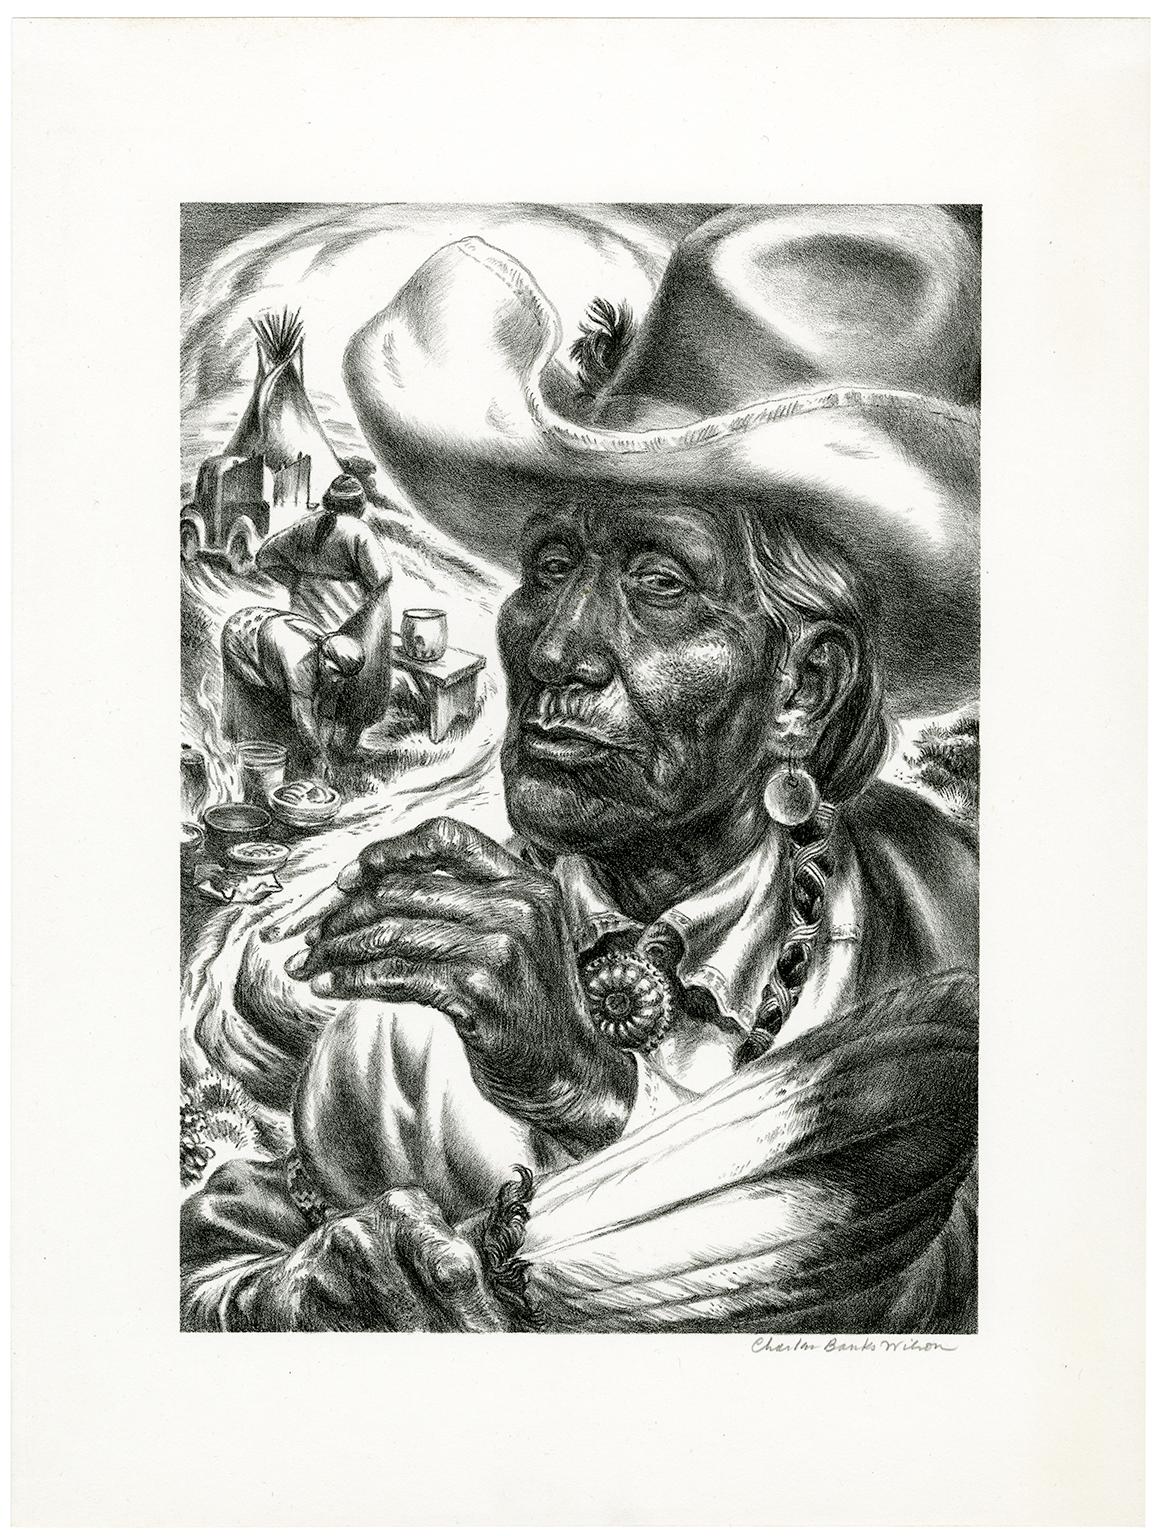 Injun-Schmuckstücke – Print von Charles Banks Wilson